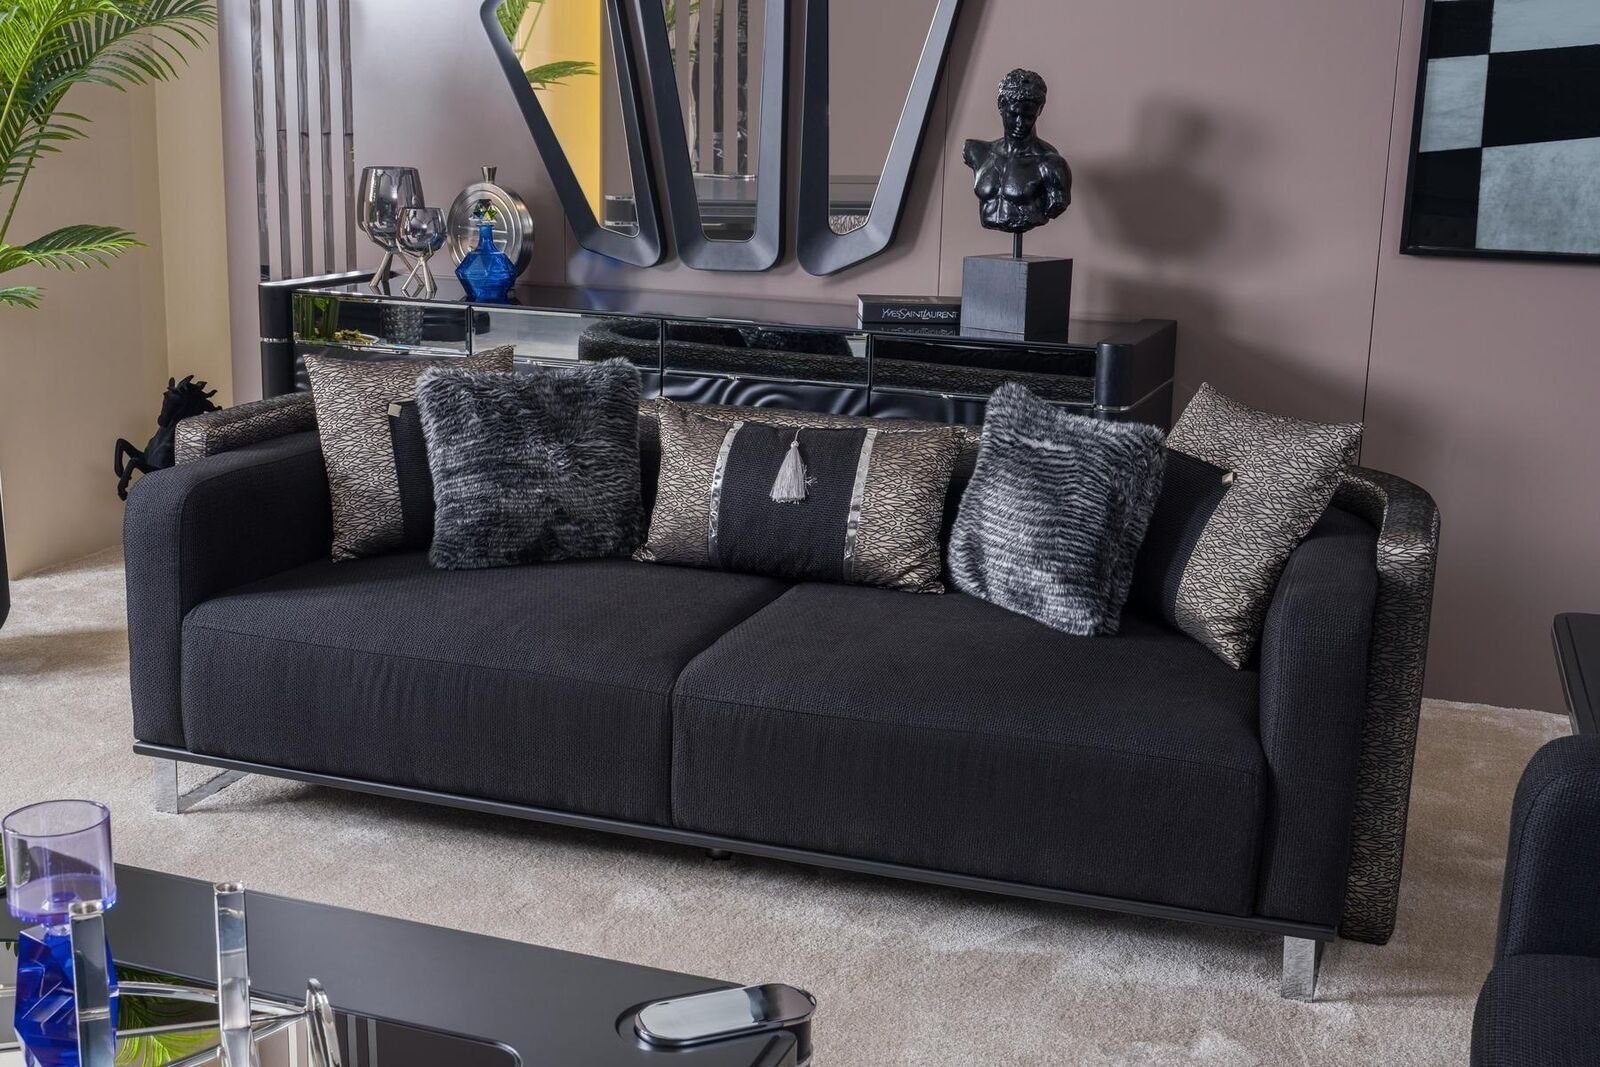 JVmoebel Sofa Dreisitzer 240cm Schwarze Luxus Couch Sofa Couchen Möbel Textil Stoff, Made In Europe